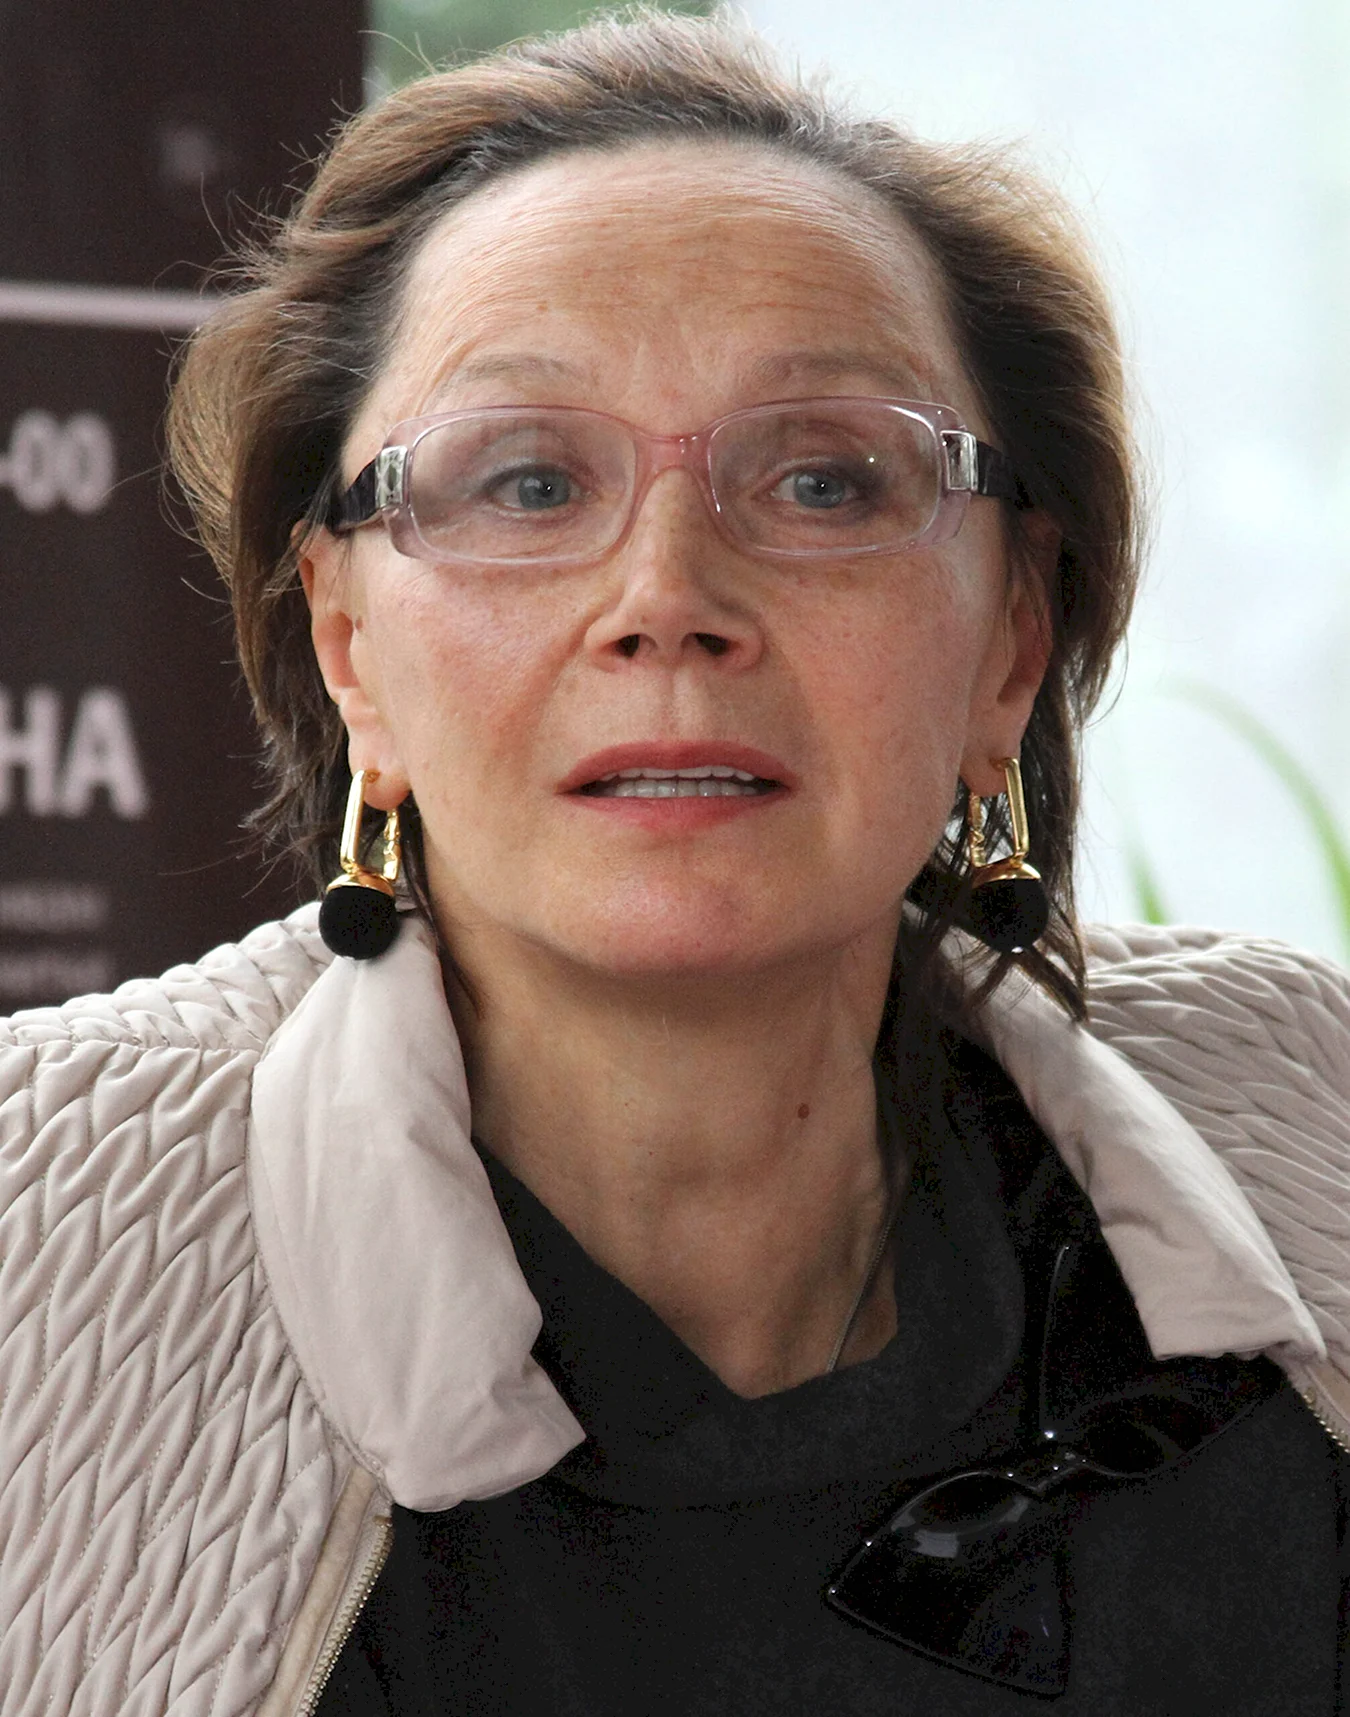 Купченко Ирина Петровна